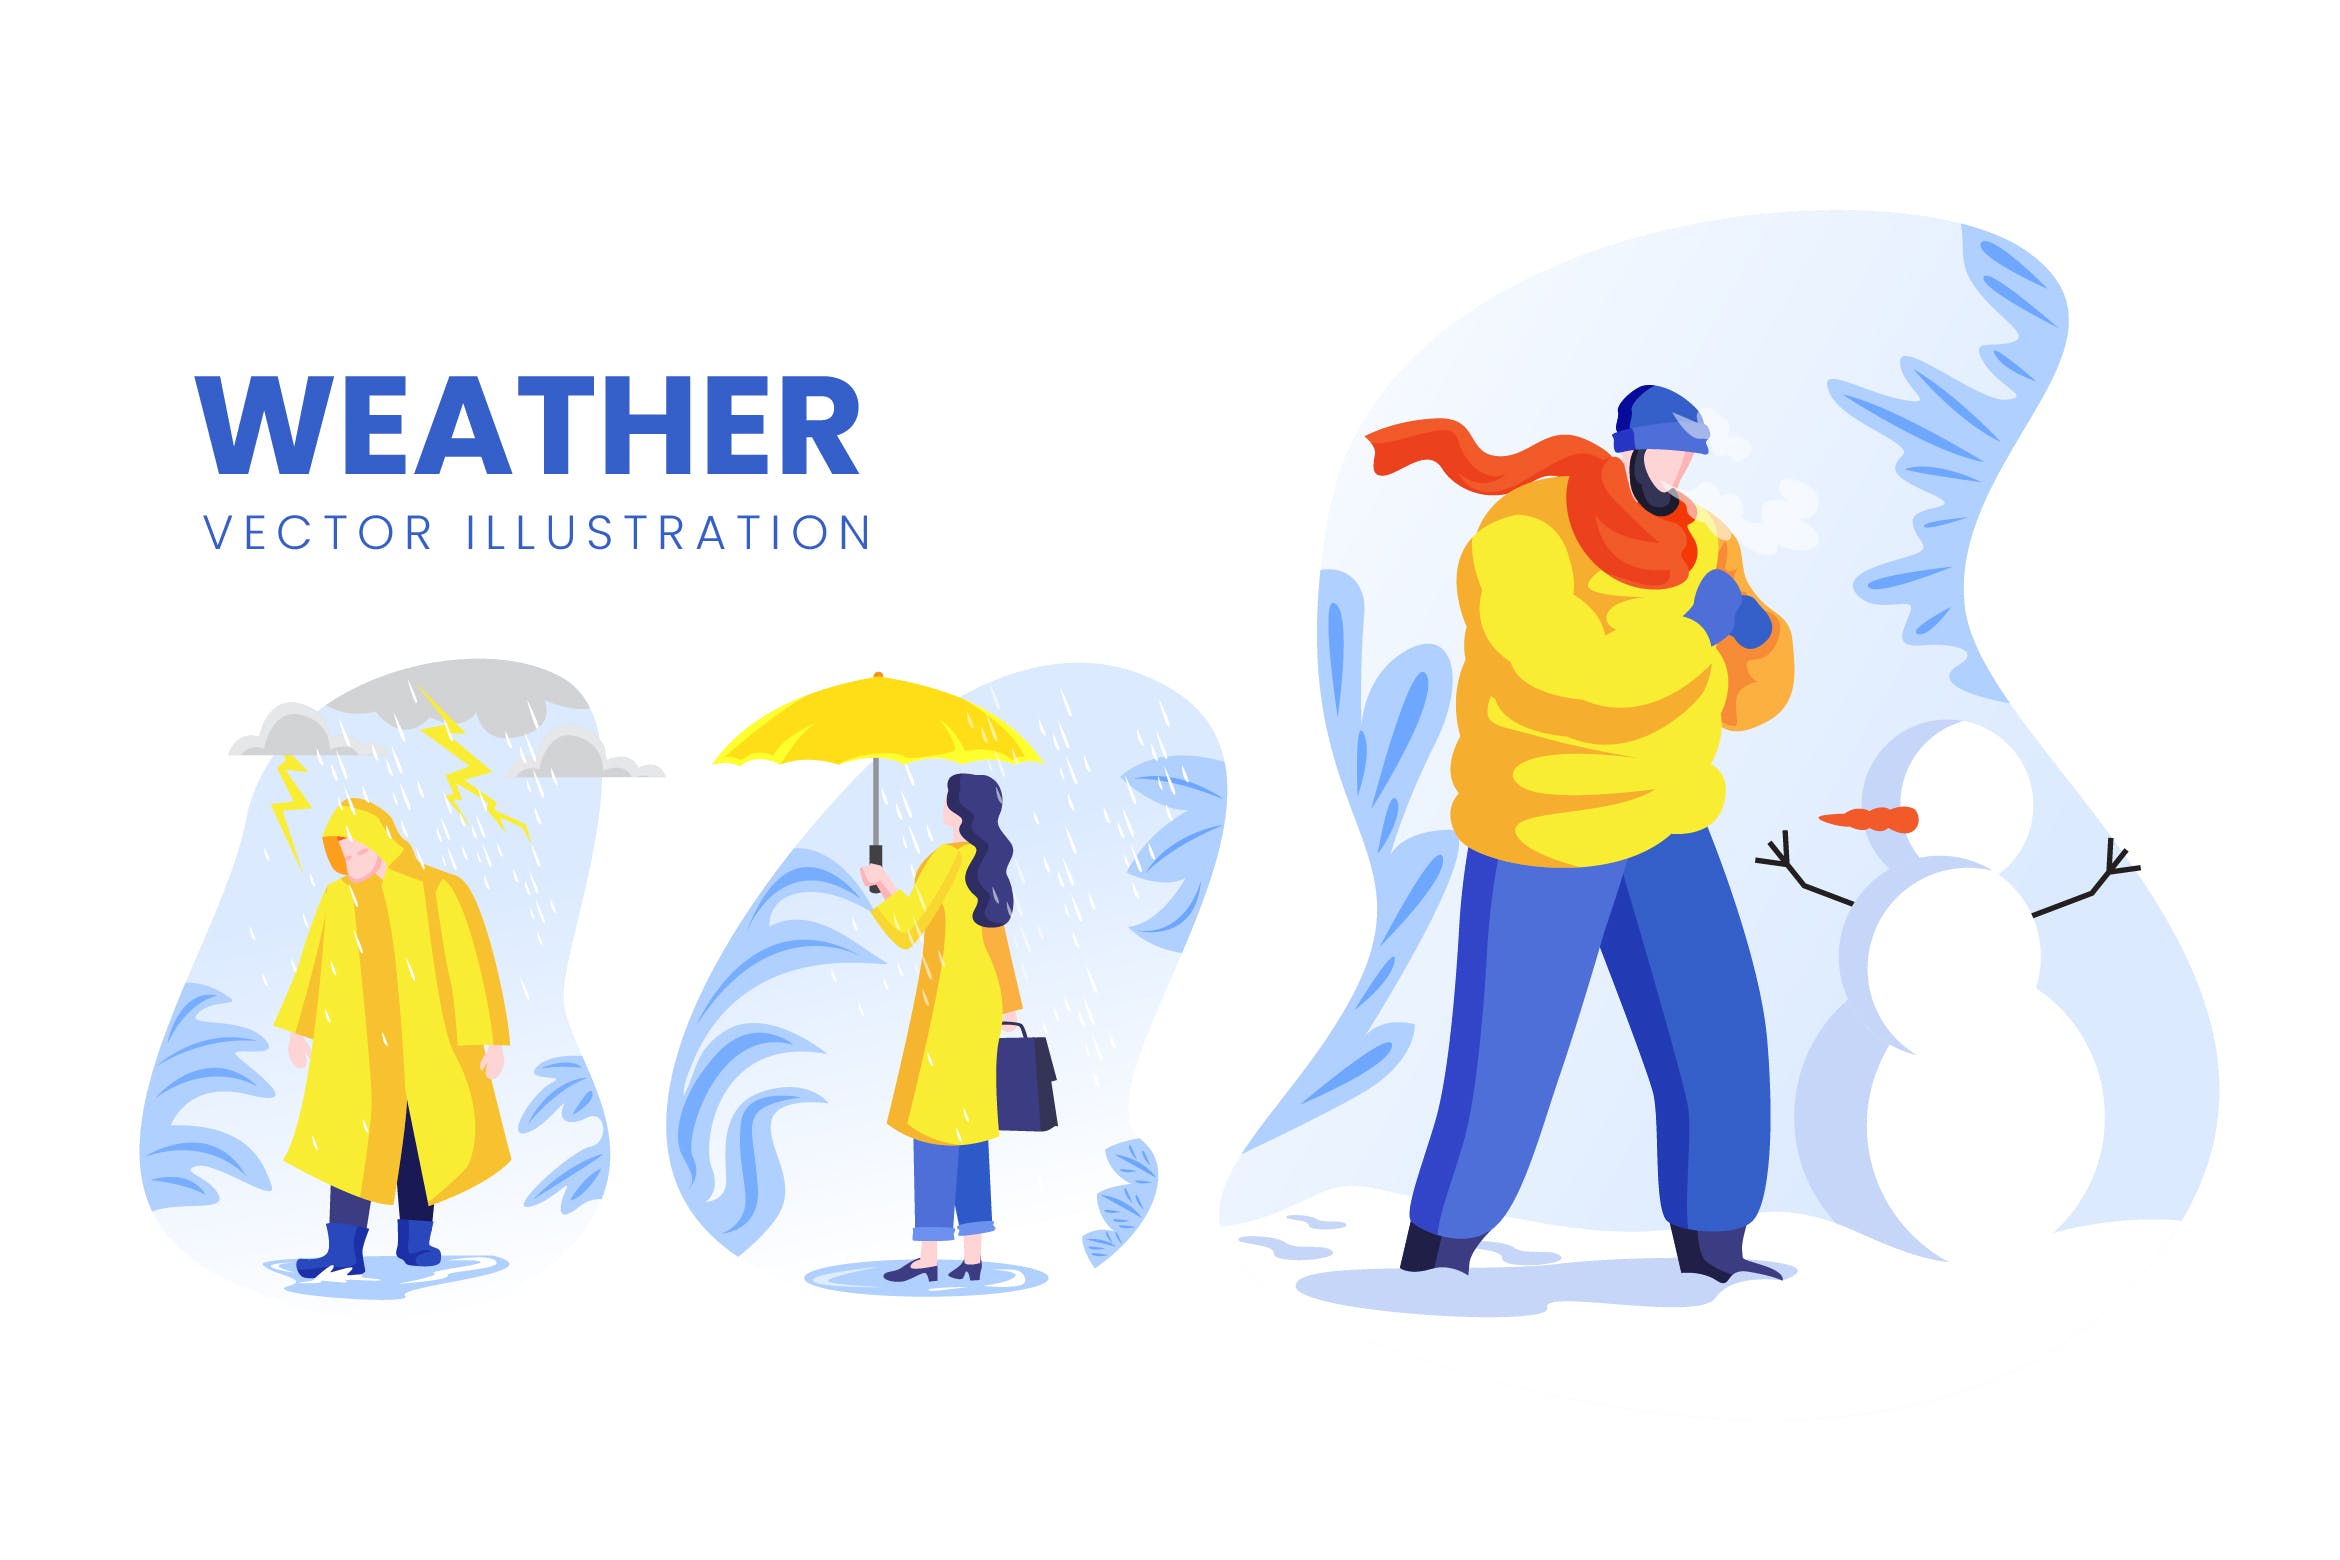 天气预报主题人物形象大洋岛精选手绘插画矢量素材 Weather Condition Vector Character Set插图